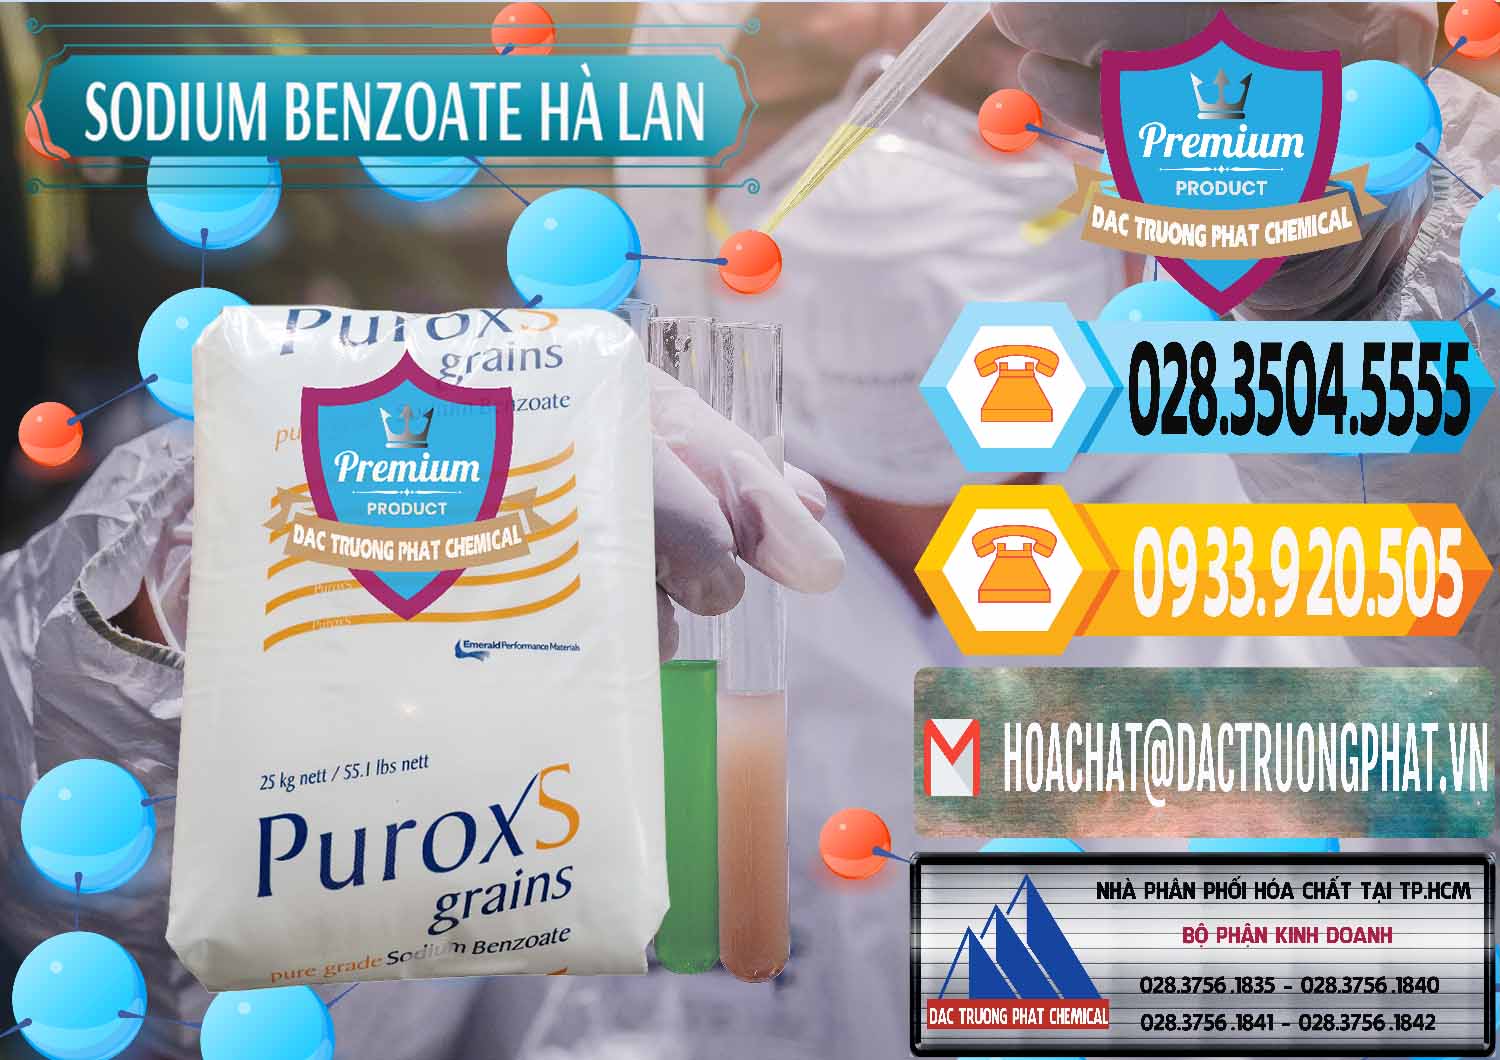 Đơn vị bán _ cung cấp Sodium Benzoate - Mốc Bột Puroxs Hà Lan Netherlands - 0467 - Nhà phân phối ( bán ) hóa chất tại TP.HCM - hoachattayrua.net